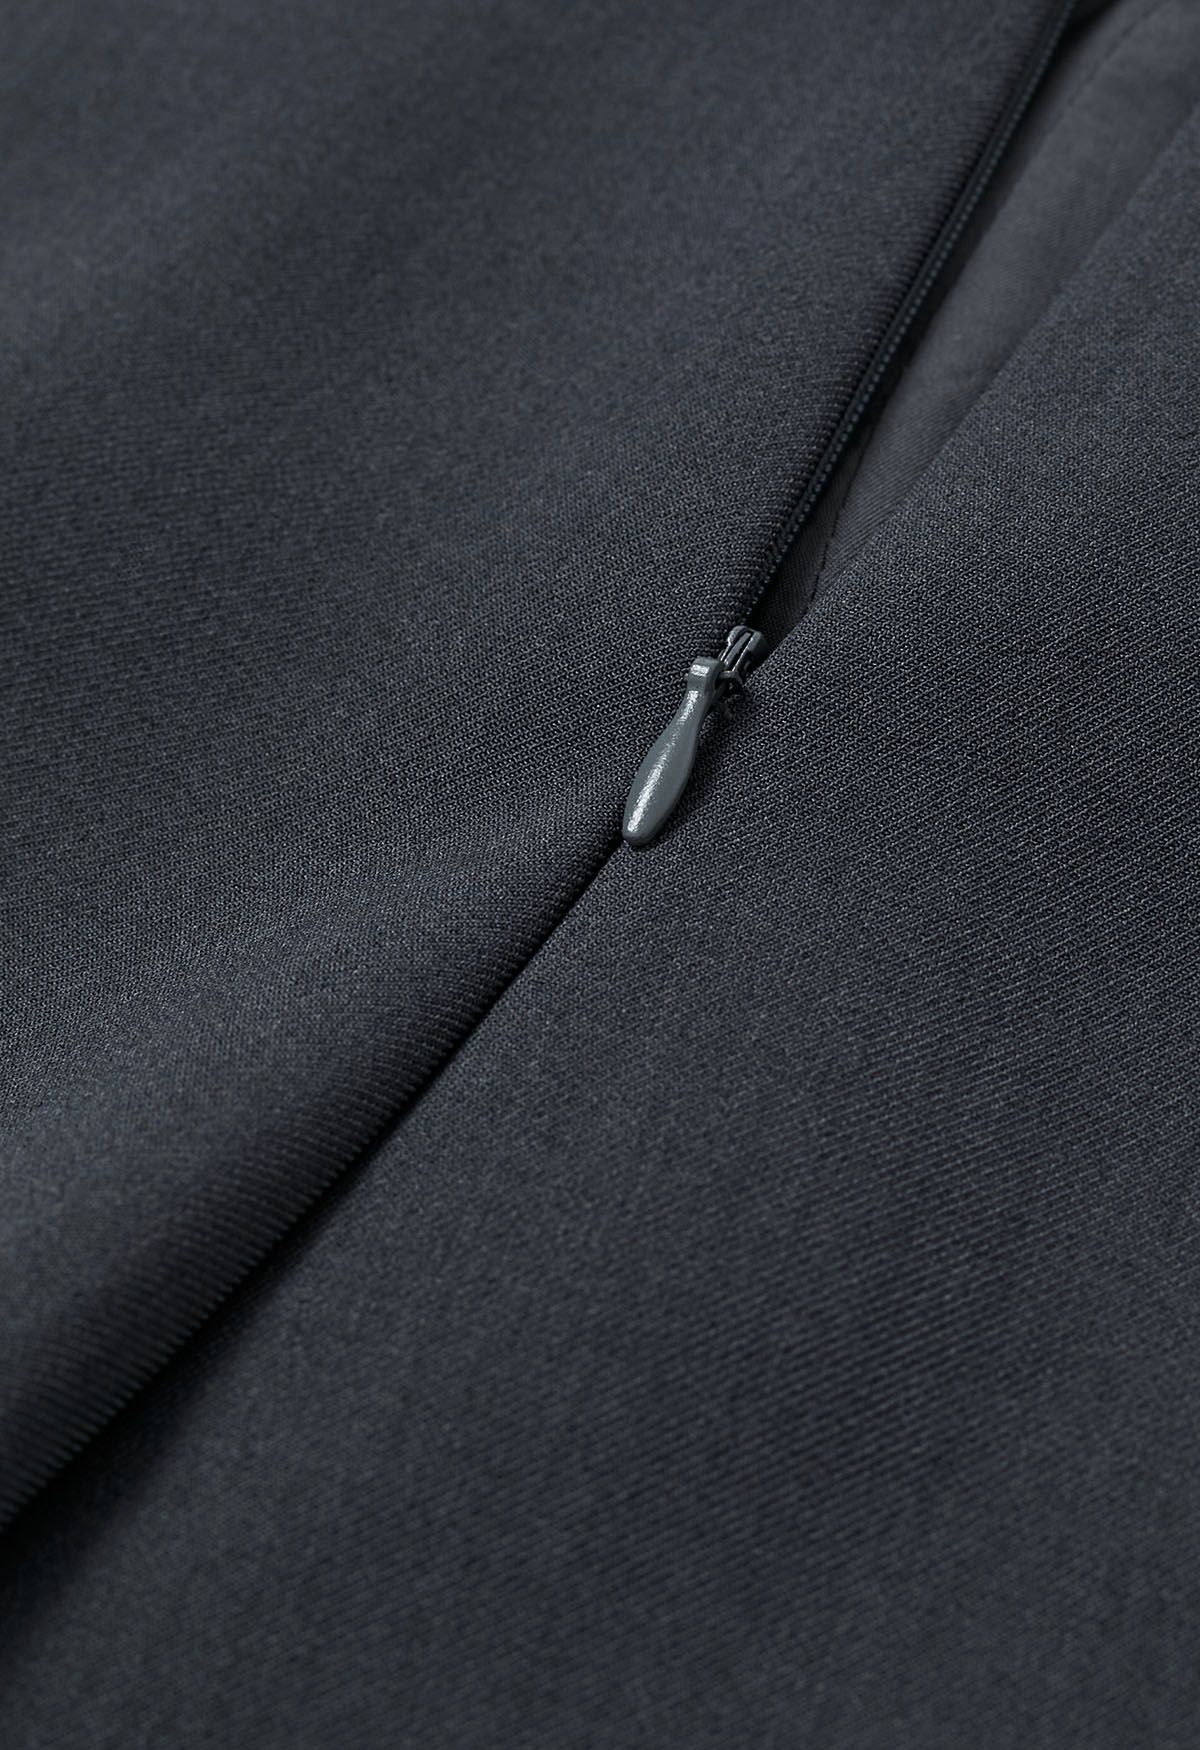 Shorts decorados con botones de cintura alta en gris